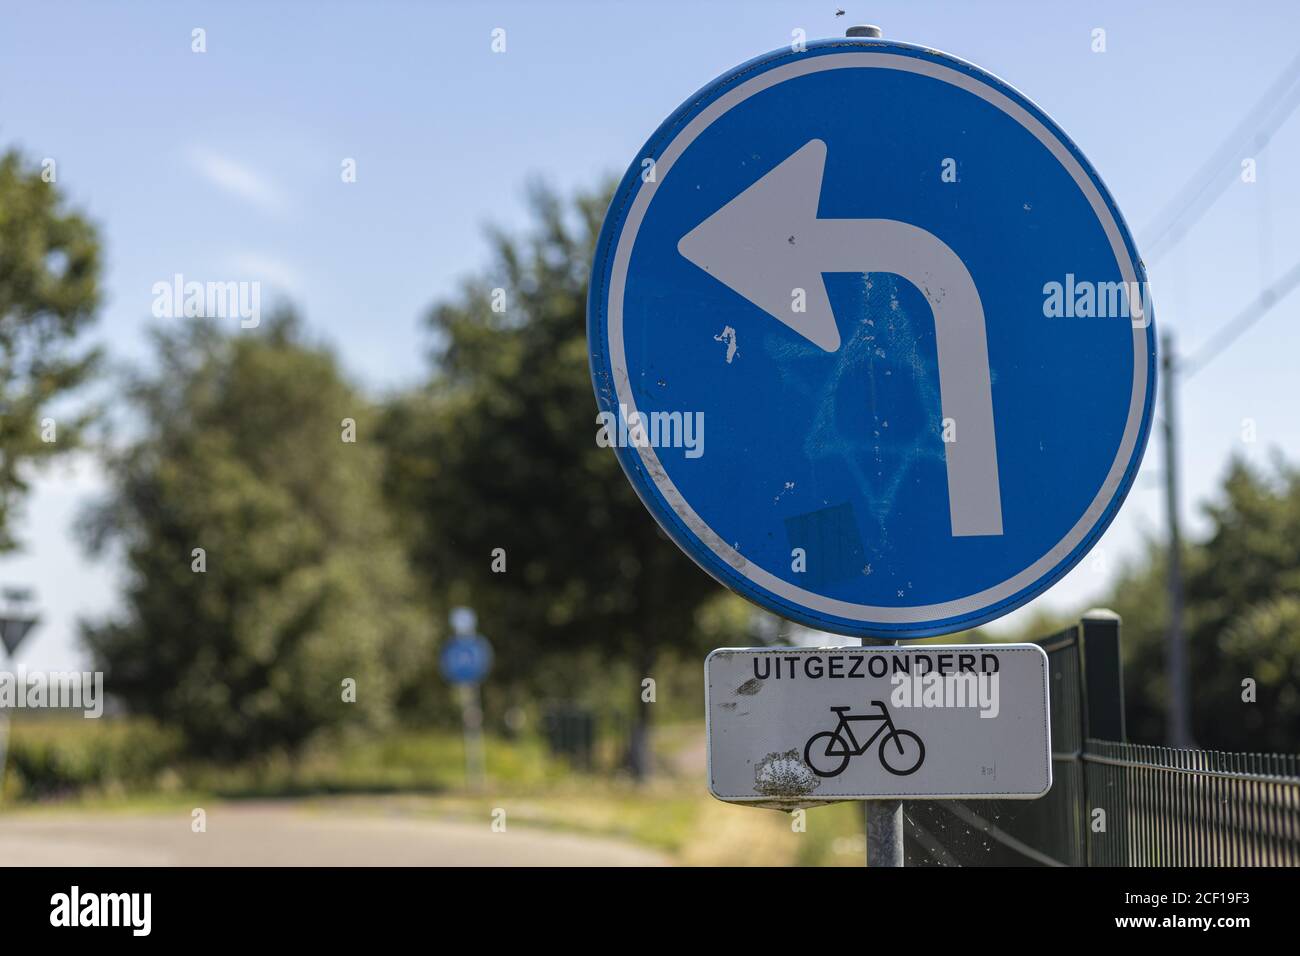 HOGE HEXEL, PAESI BASSI - 02 agosto 2020: Segnale stradale olandese che indica la direzione obbligatoria per i veicoli ad eccezione dei ciclisti Foto Stock